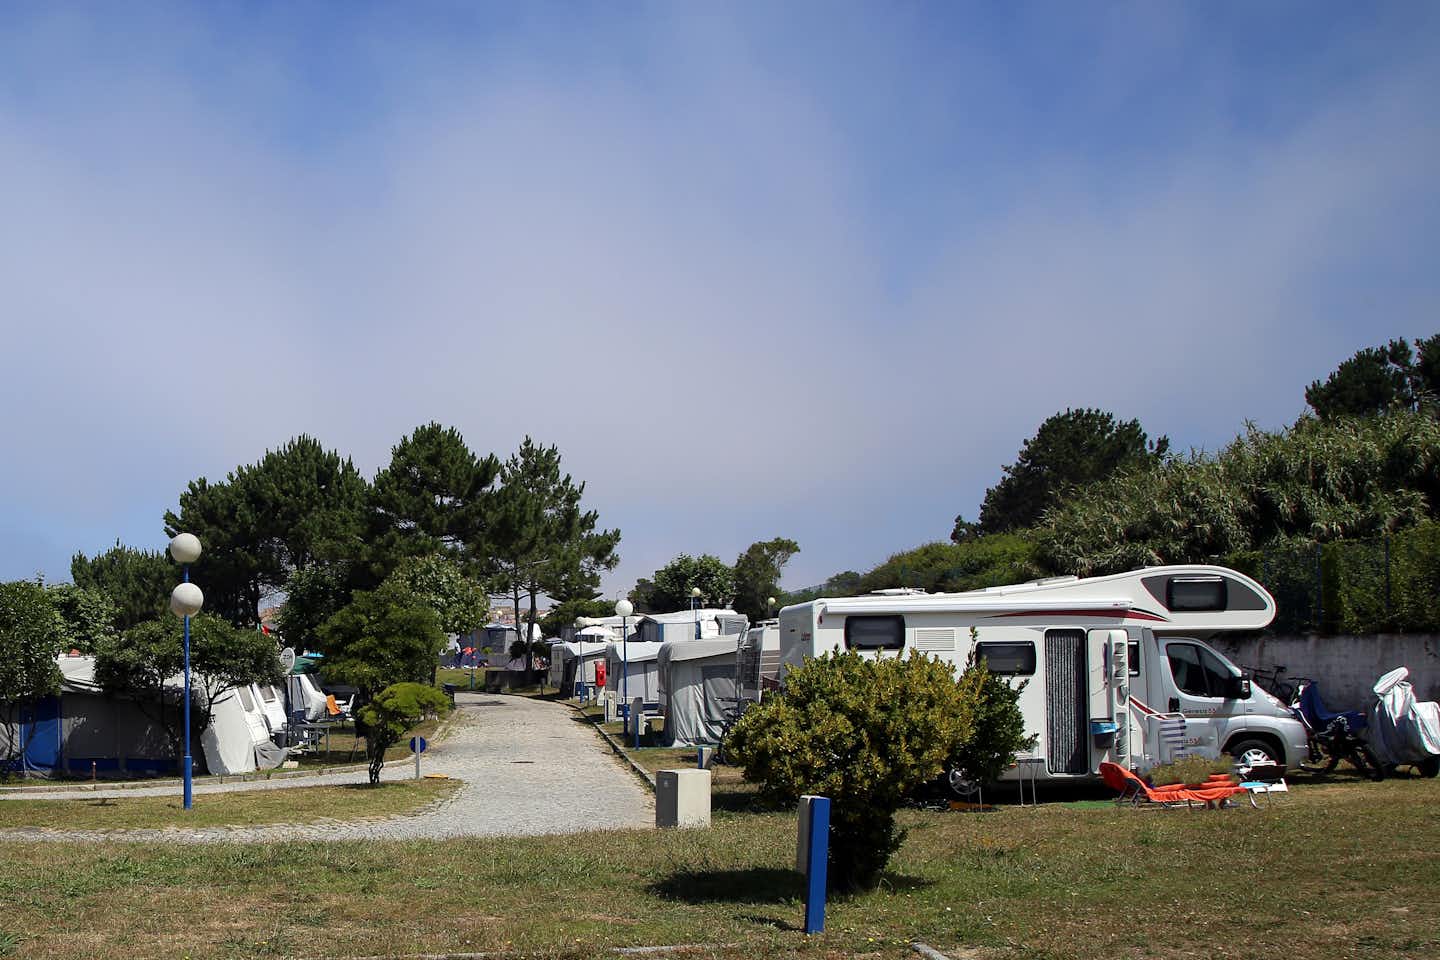 Camping ORBITUR Canidelo - Wohnwagen- und Zeltstellplatz zwischen Bäumen auf dem Campingplatz